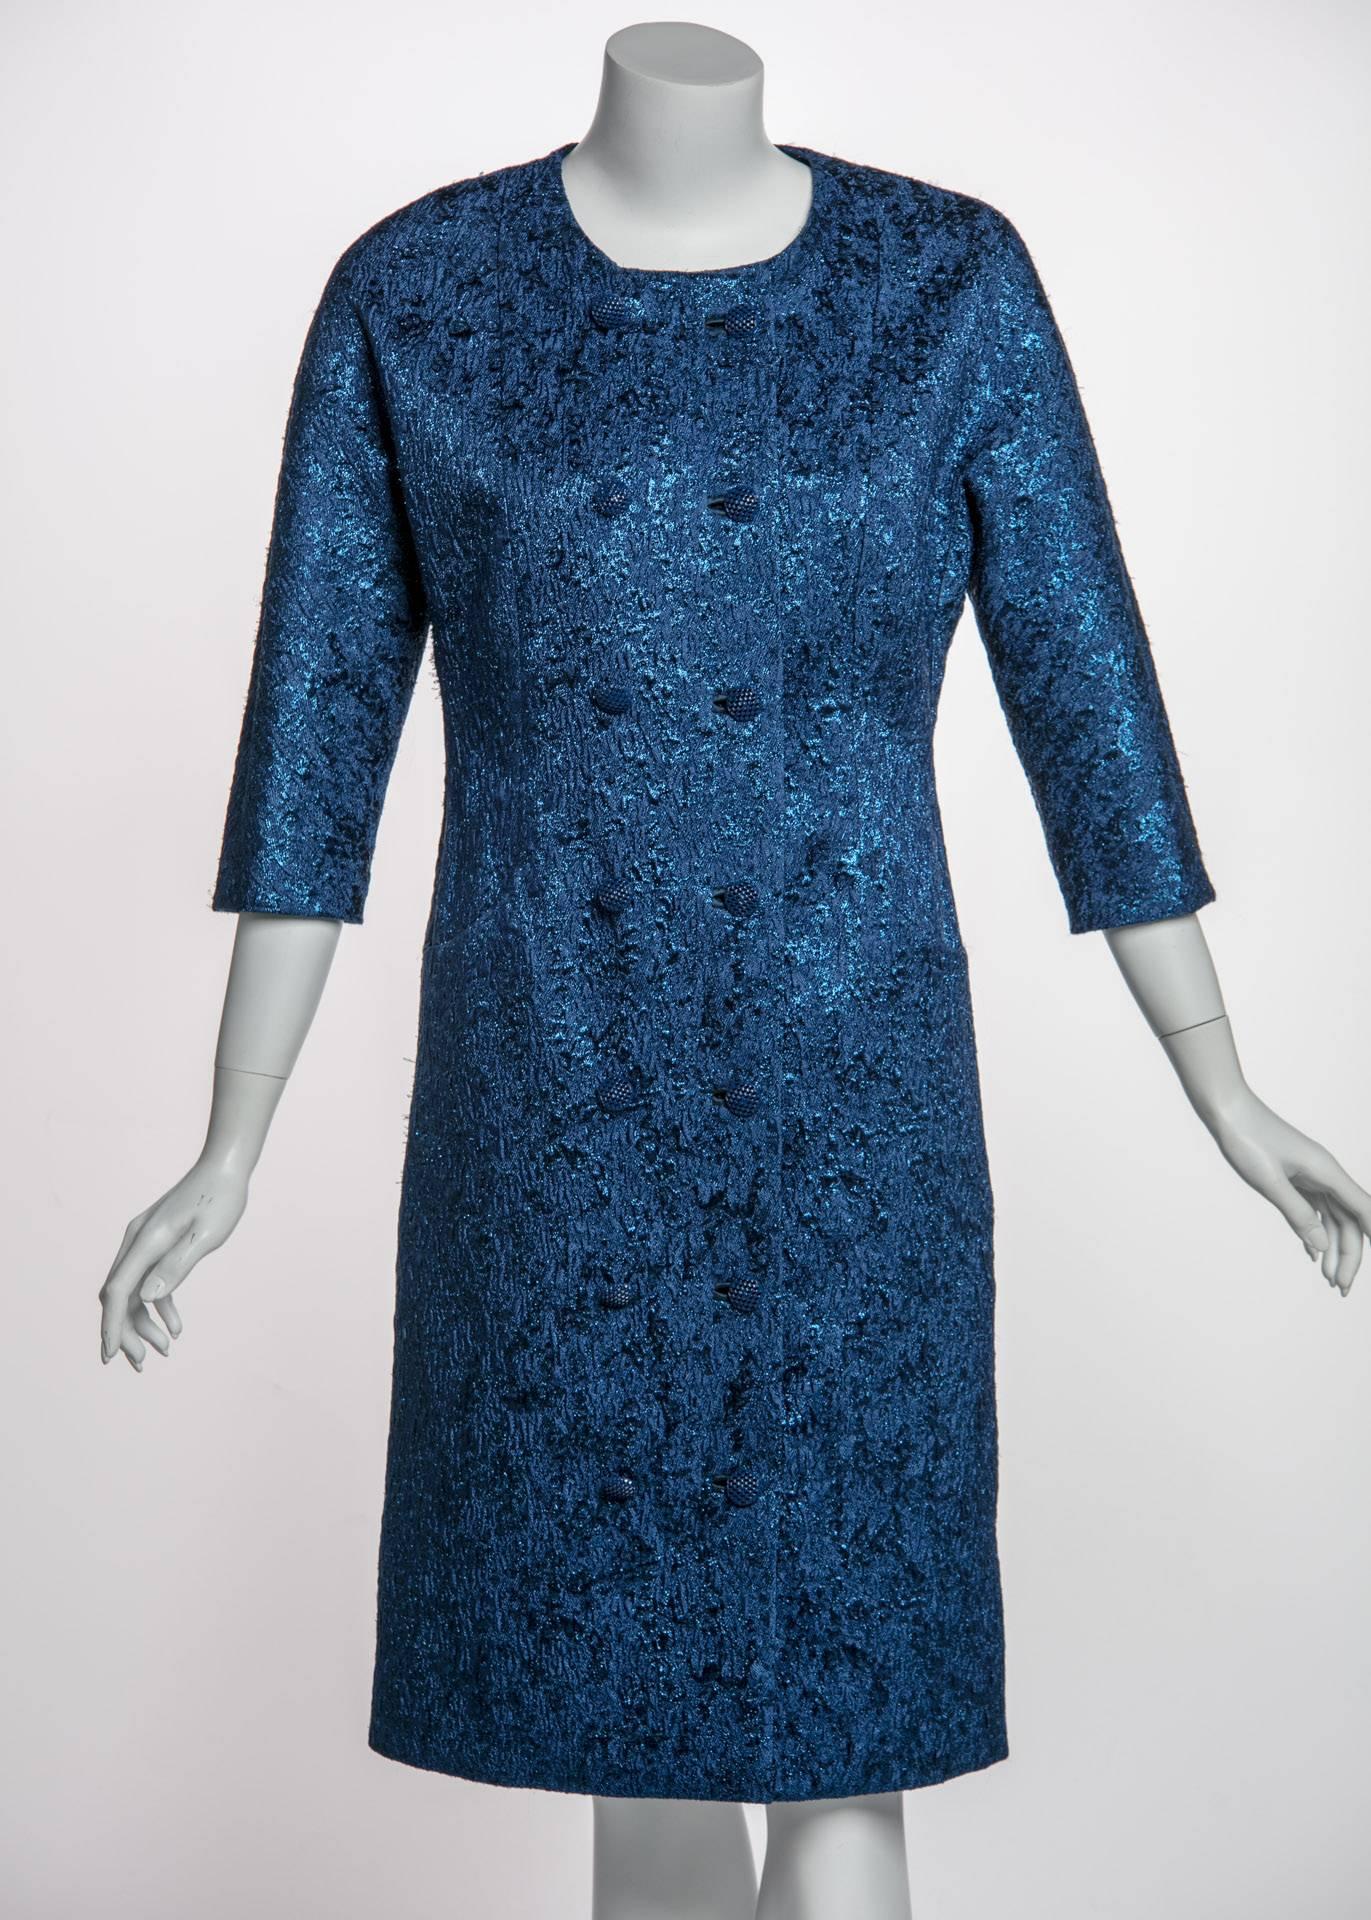 Comme un saphir taillé en princesse, cette  Le manteau du soir Balenciaga invite le regard à se perdre dans le bleu. Le caractère discret de ce designer d'origine espagnole contraste fortement avec la présence audacieuse de ses vêtements. Issu de la